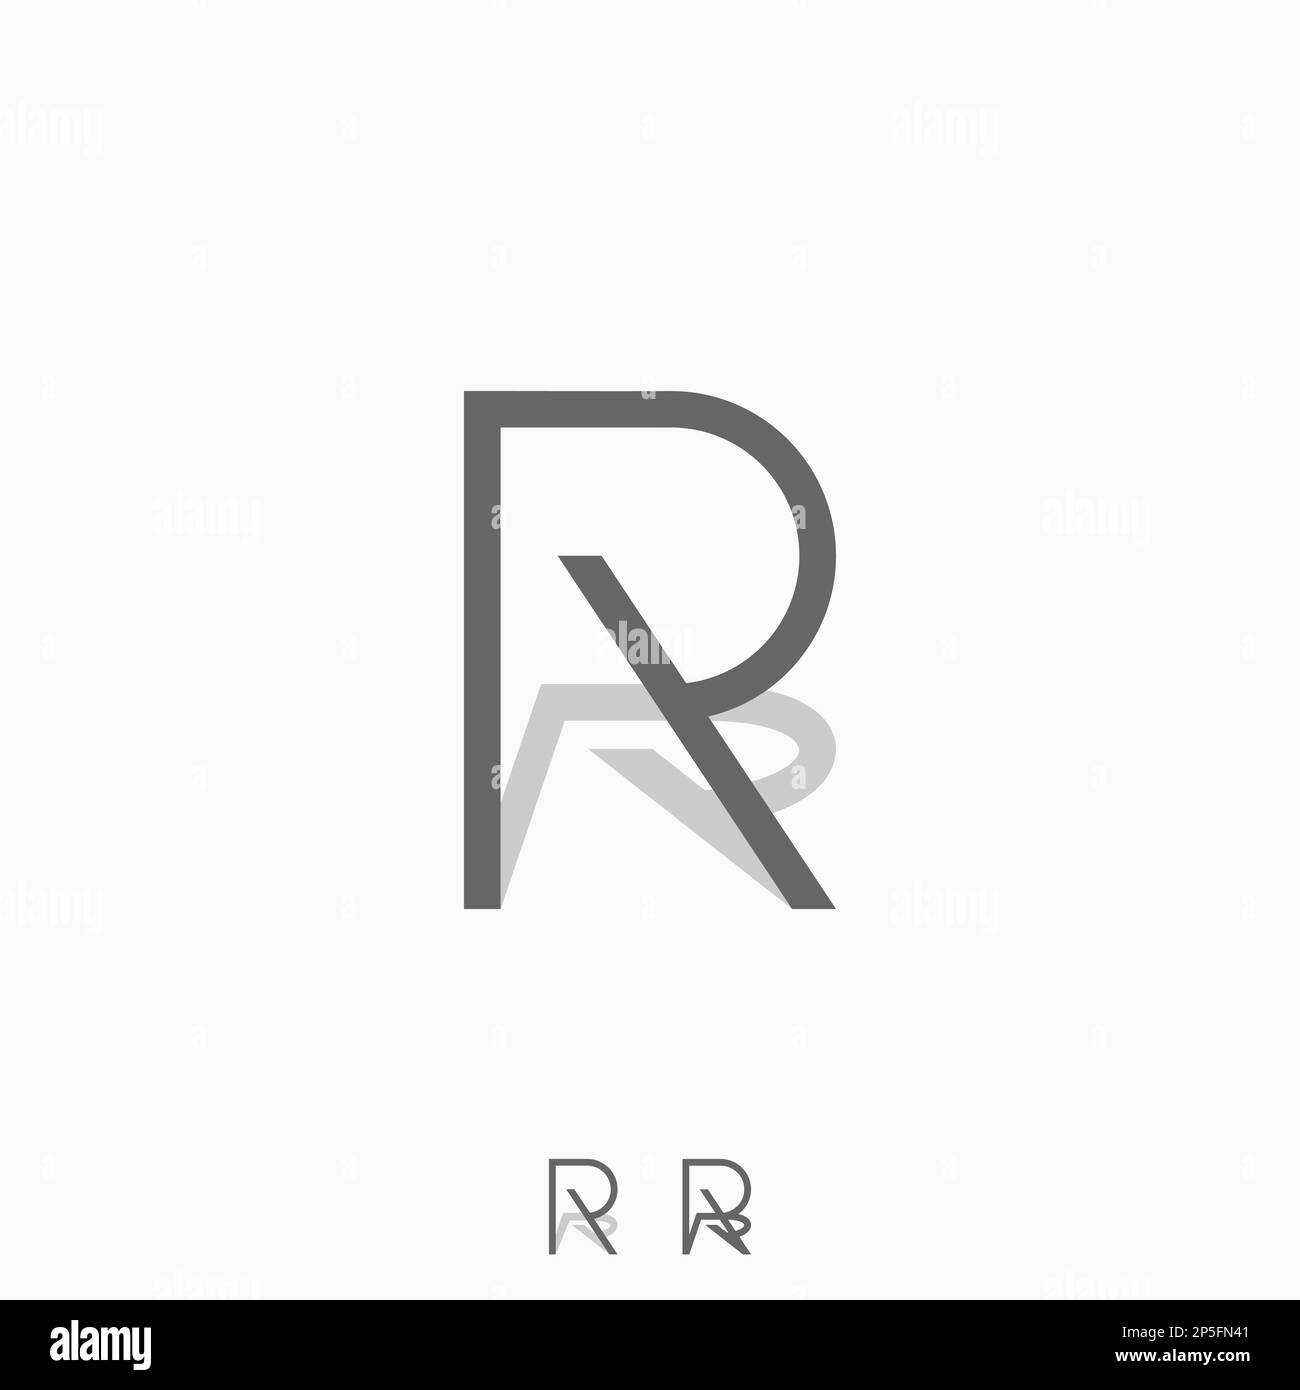 Logo-Design Grafikkonzept Creative Premium-freier Vektor einzigartiger Buchstabe oder Wort R ohne serifenfarbene Schrift mit Schatten hinter der ursprünglichen Typografie oder dem Monogramm Stock Vektor